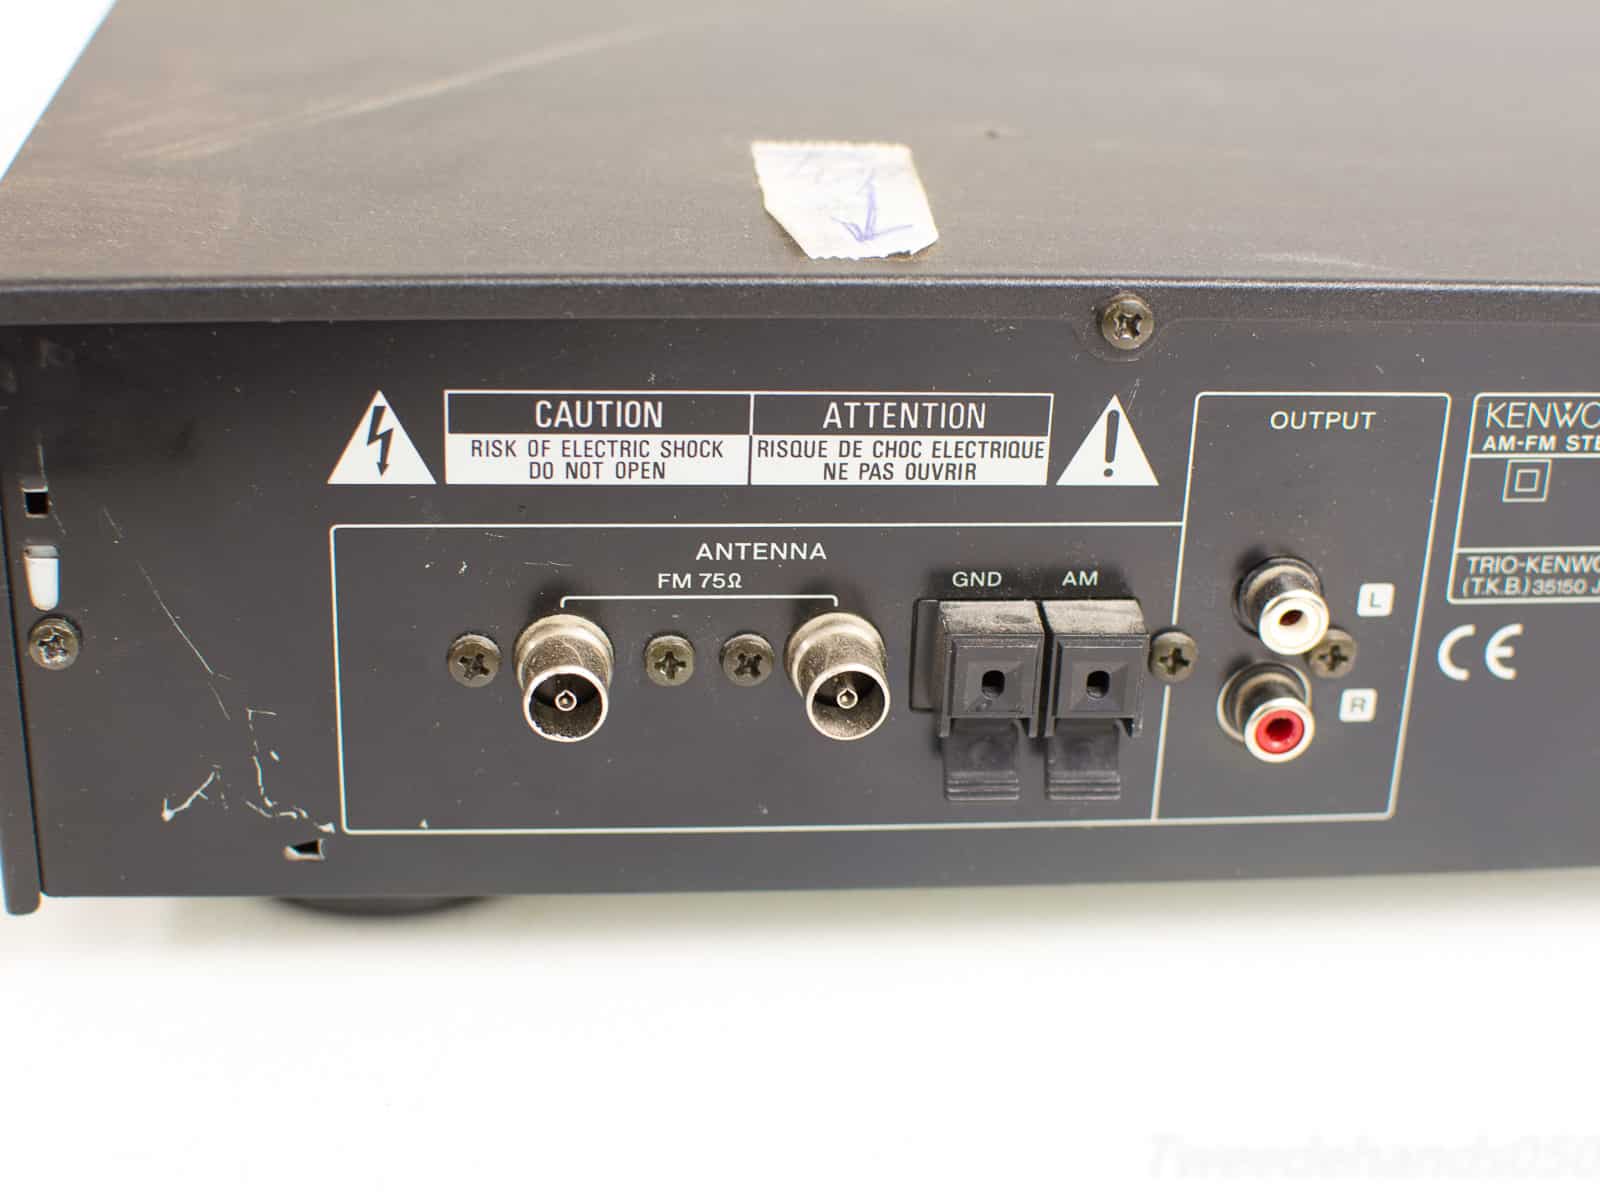 Kenwood AM-FM stereo synthesizer turner 26640